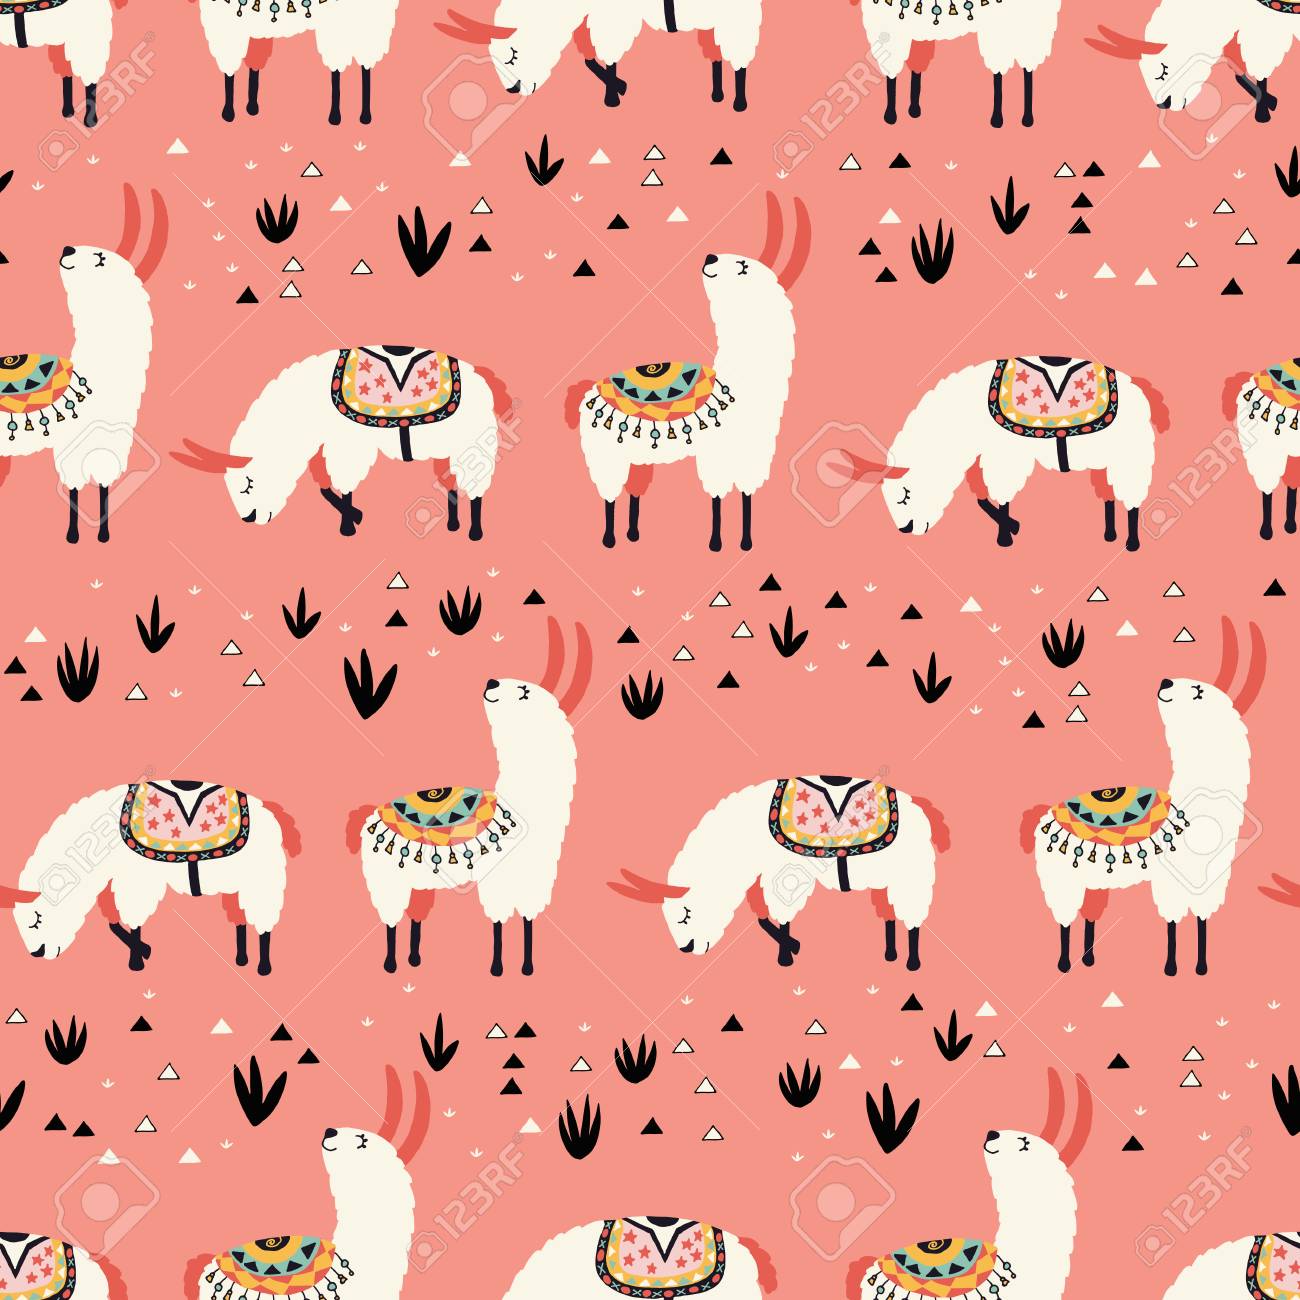 Llama Desktop Wallpapers